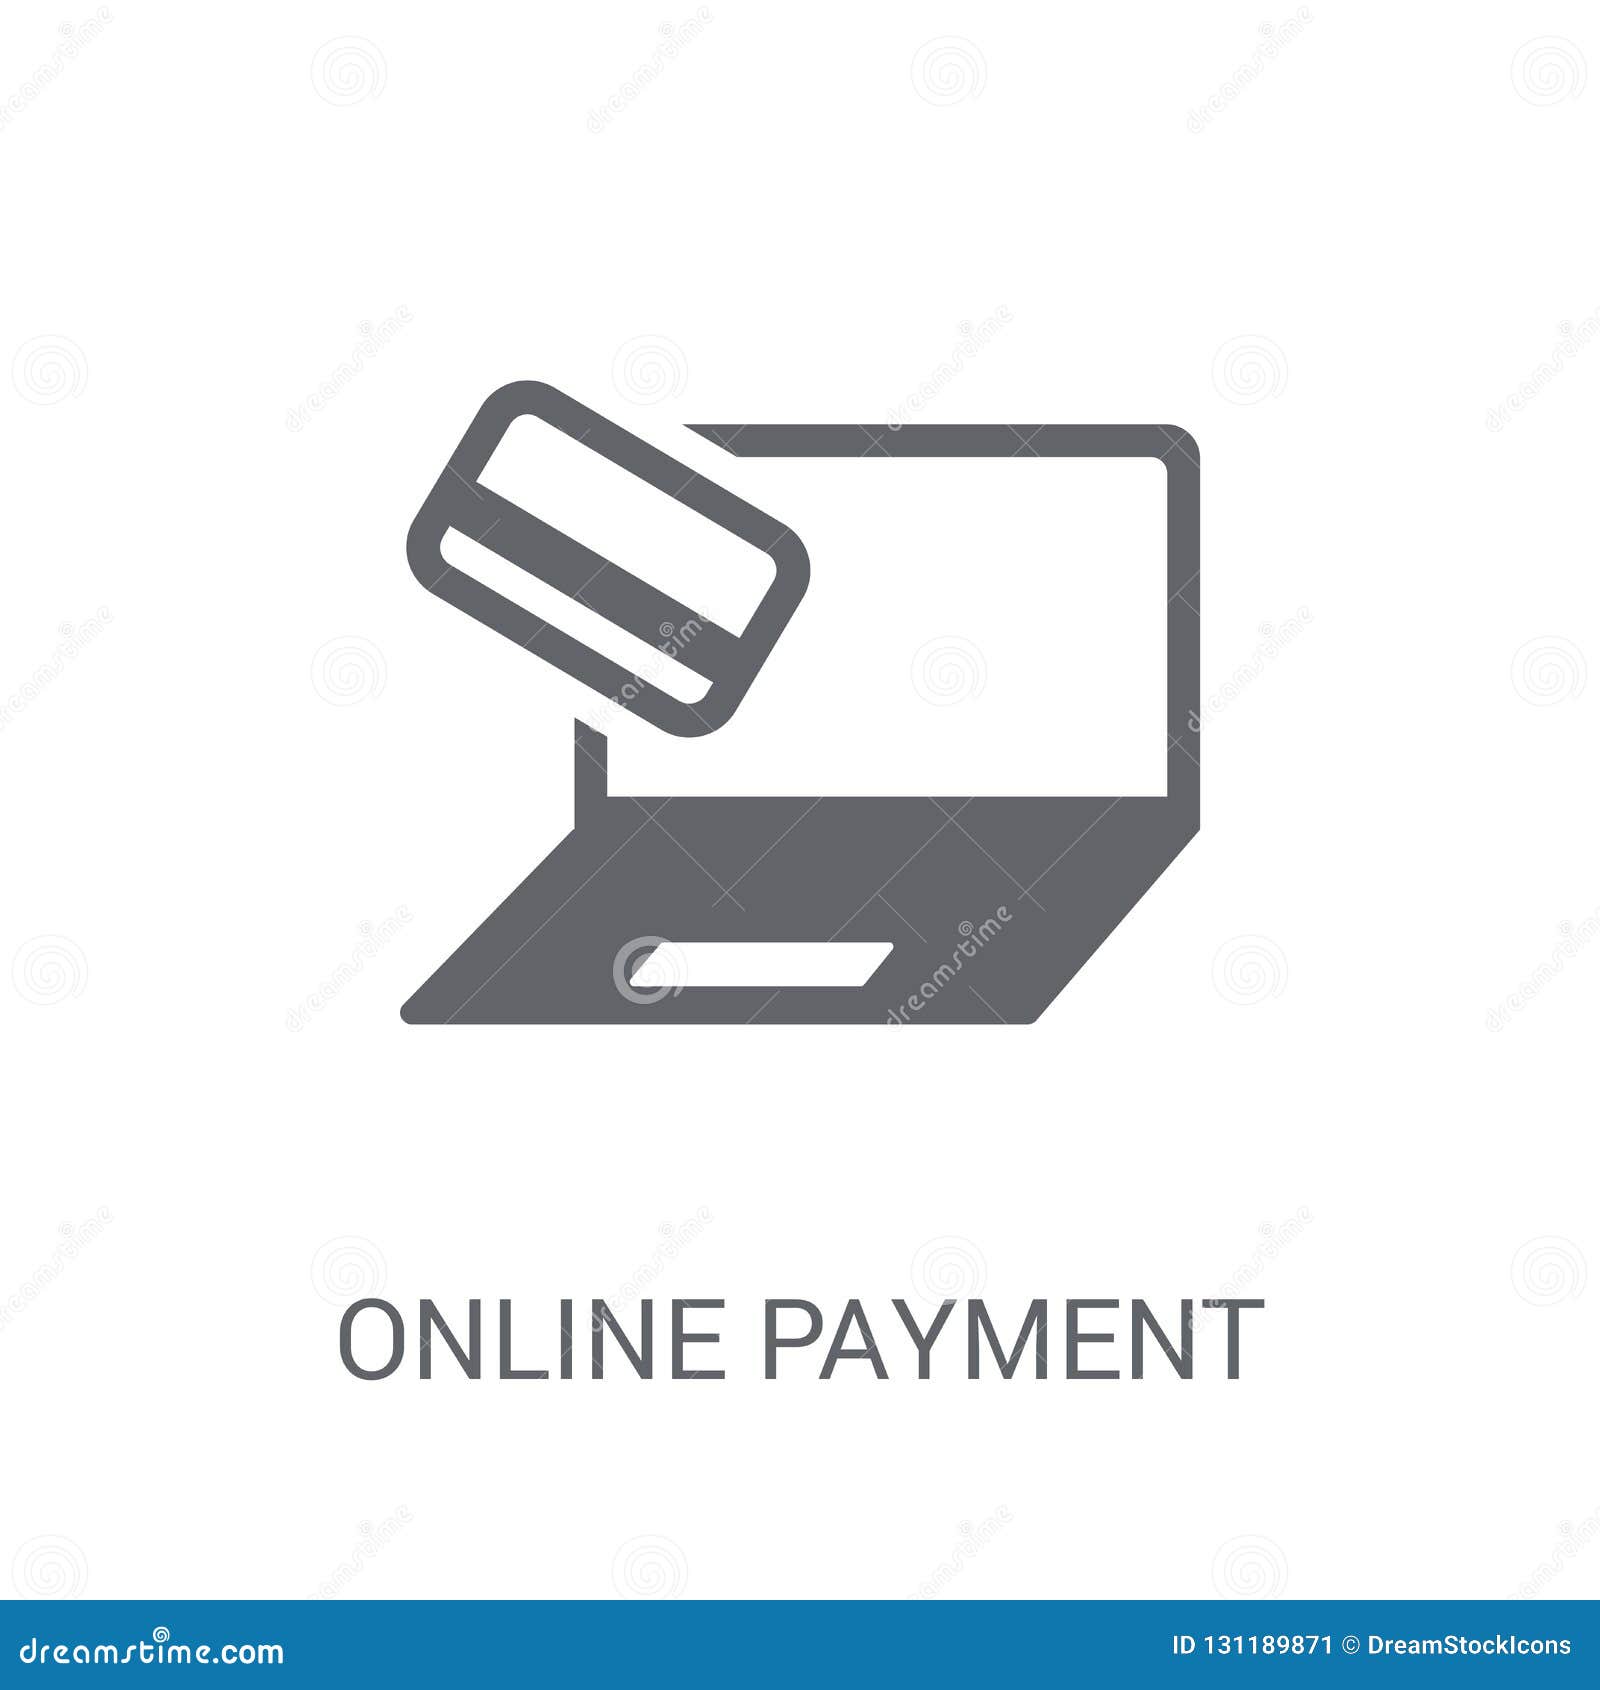 Với thanh toán trực tuyến, bạn sẽ tiết kiệm thời gian và công sức khi mua sắm trực tuyến. Không còn phải lo lắng về việc đến ngân hàng để chuyển tiền, công nghệ thanh toán trực tuyến sẽ giúp bạn tiết kiệm được nhiều thời gian và tiền bạc hơn. Hãy xem ngay hình ảnh liên quan đến thanh toán trực tuyến để khám phá thêm!